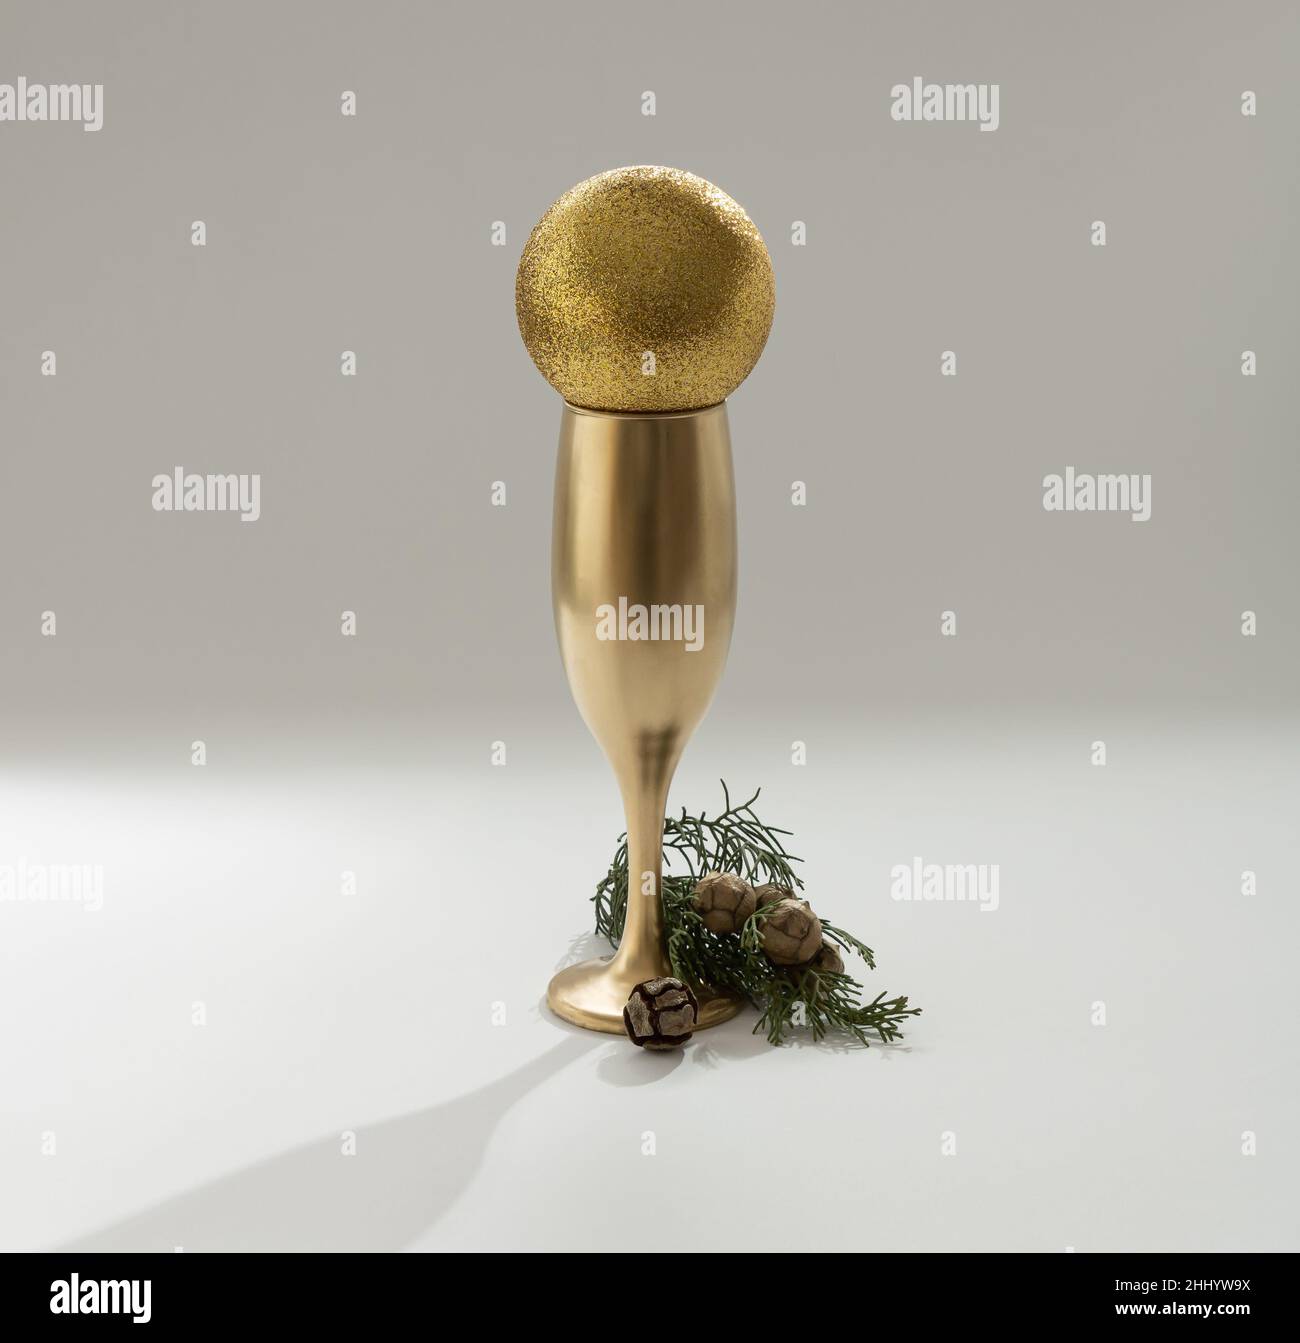 Weihnachtsbaum mit einem goldenen Glas Champagner. Minimales Neujahrskonzept. Stockfoto